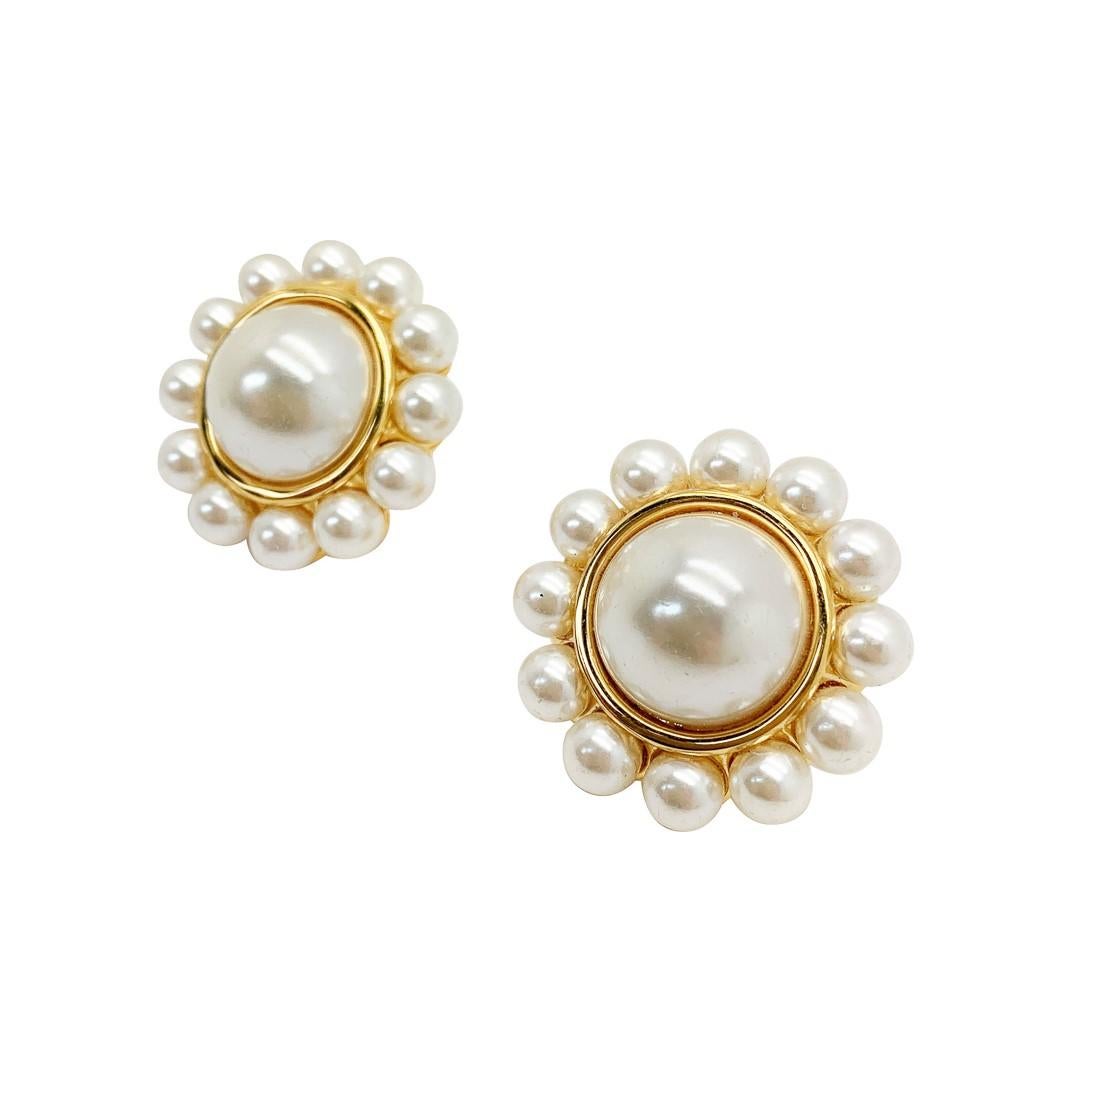 80s pearl earrings